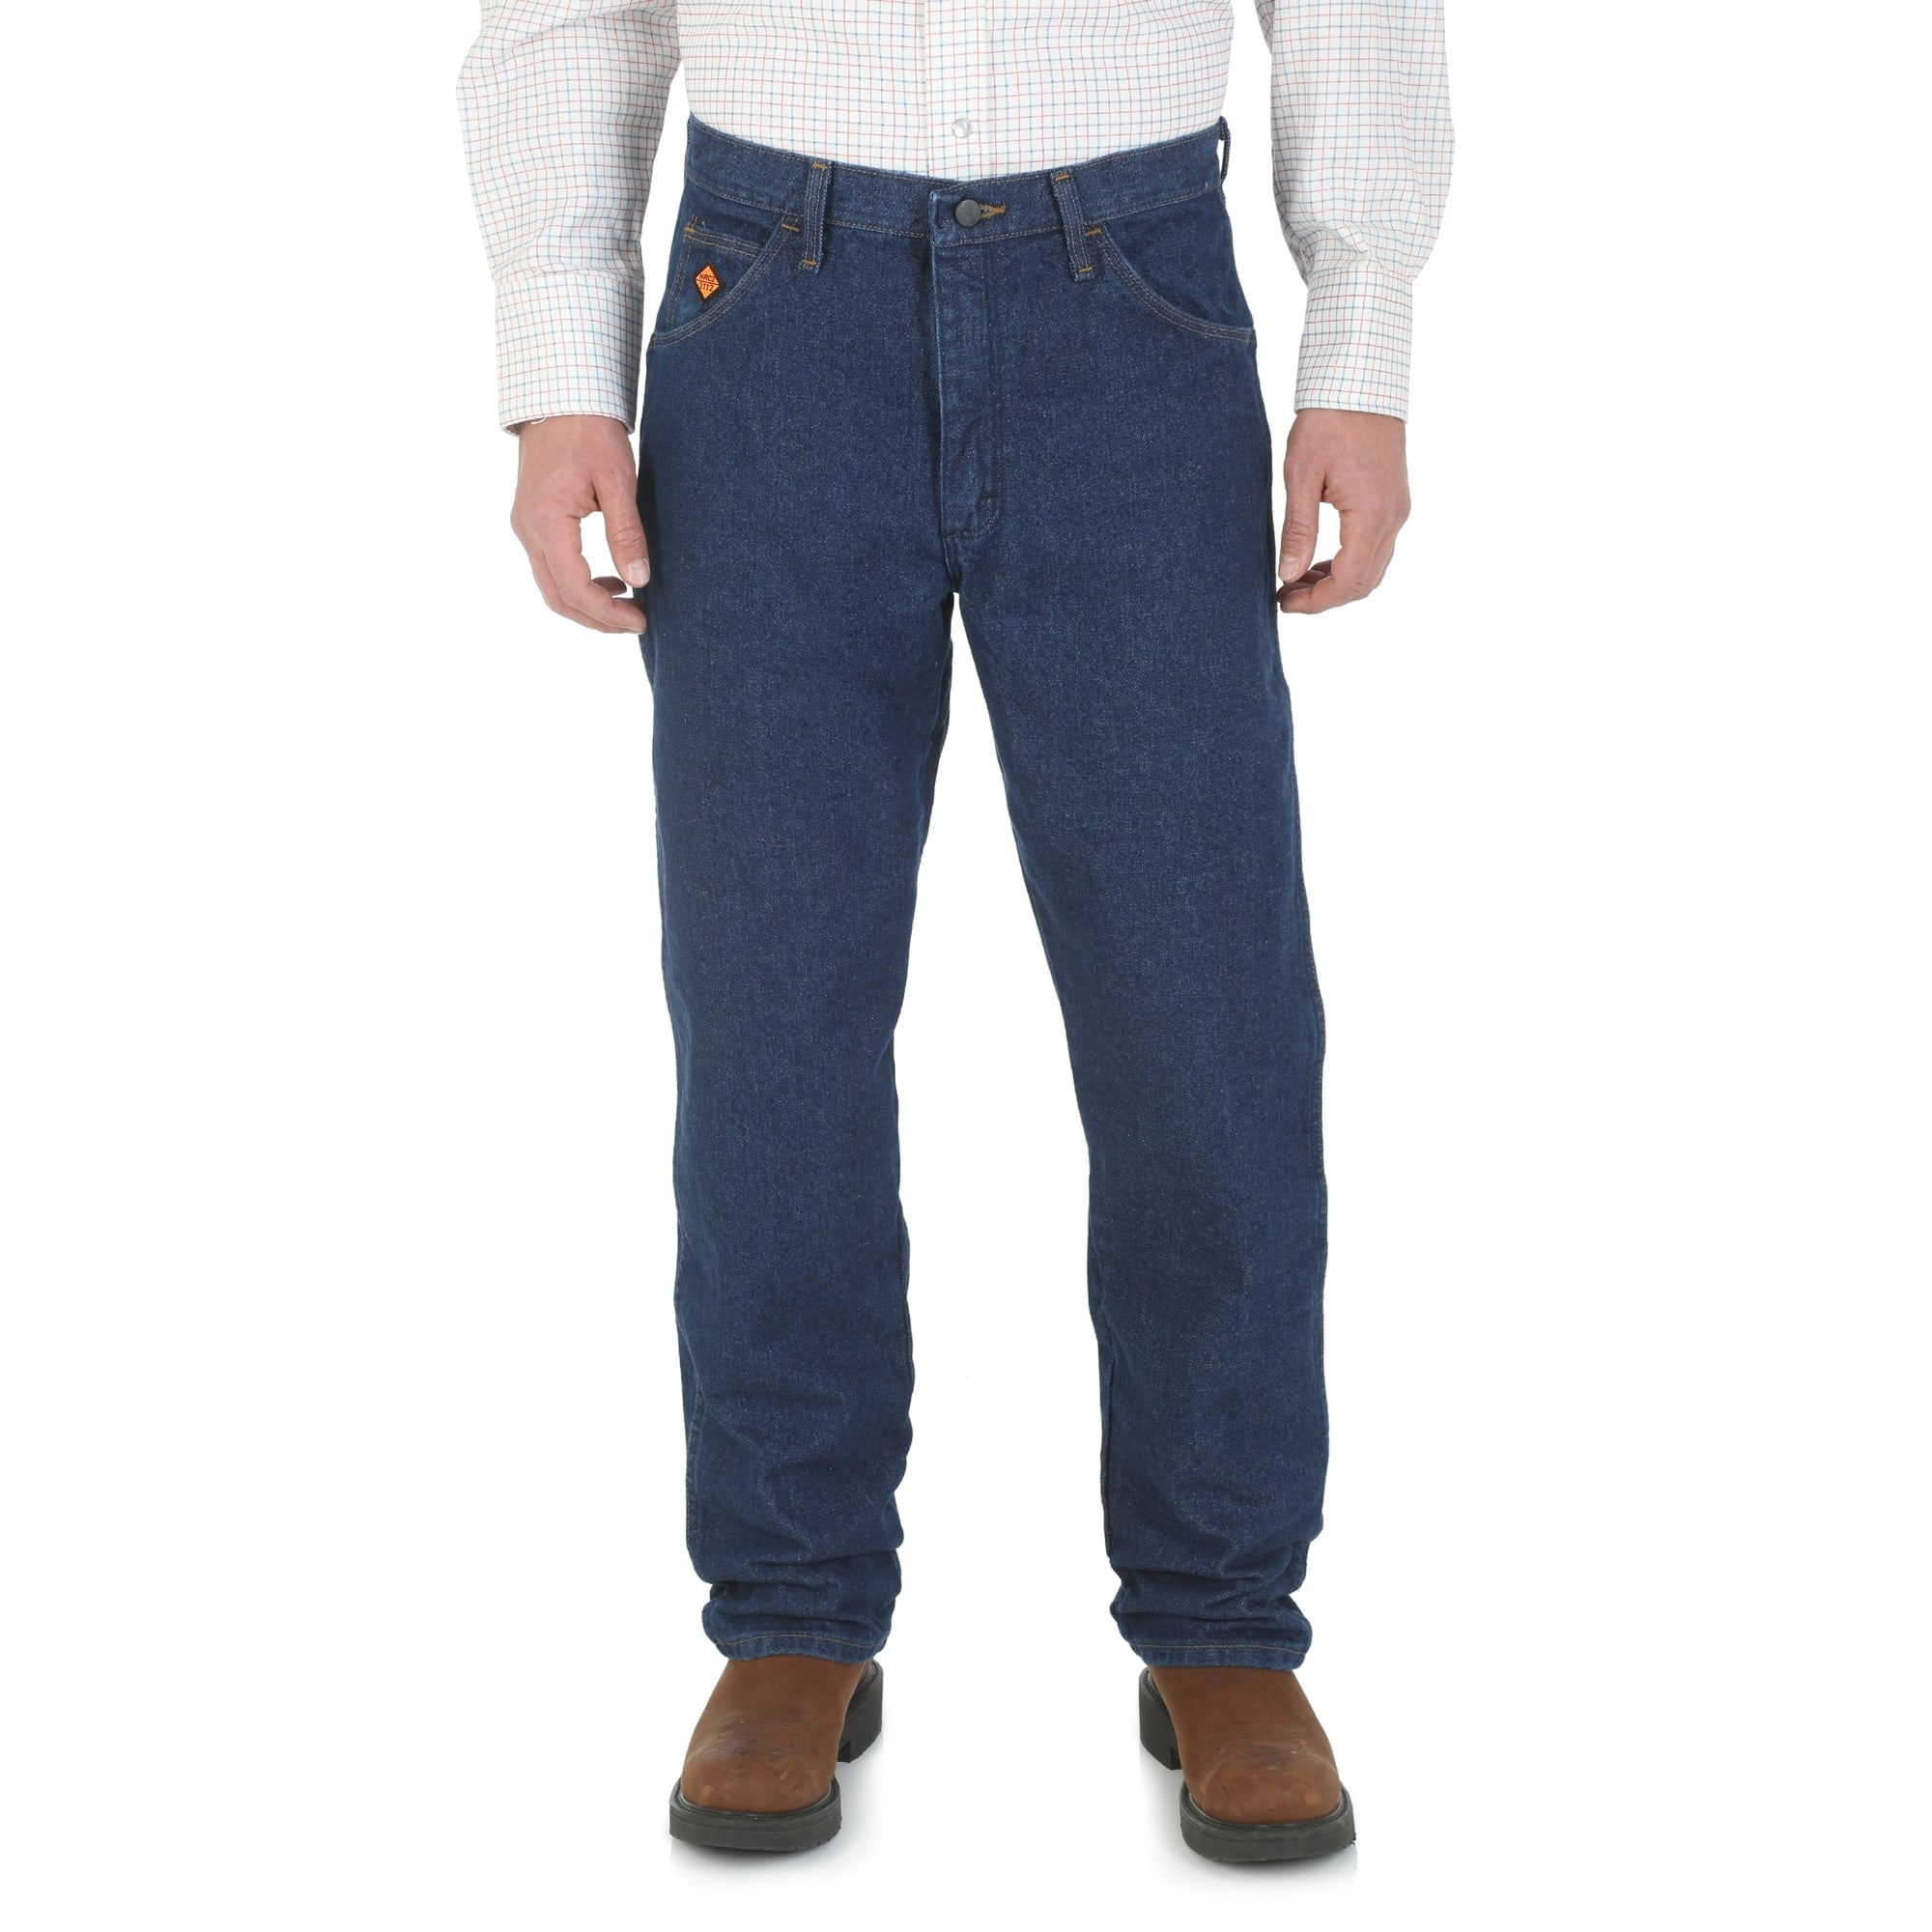 Men's Wrangler Workwear Flame Resistant Original Fit Jean 